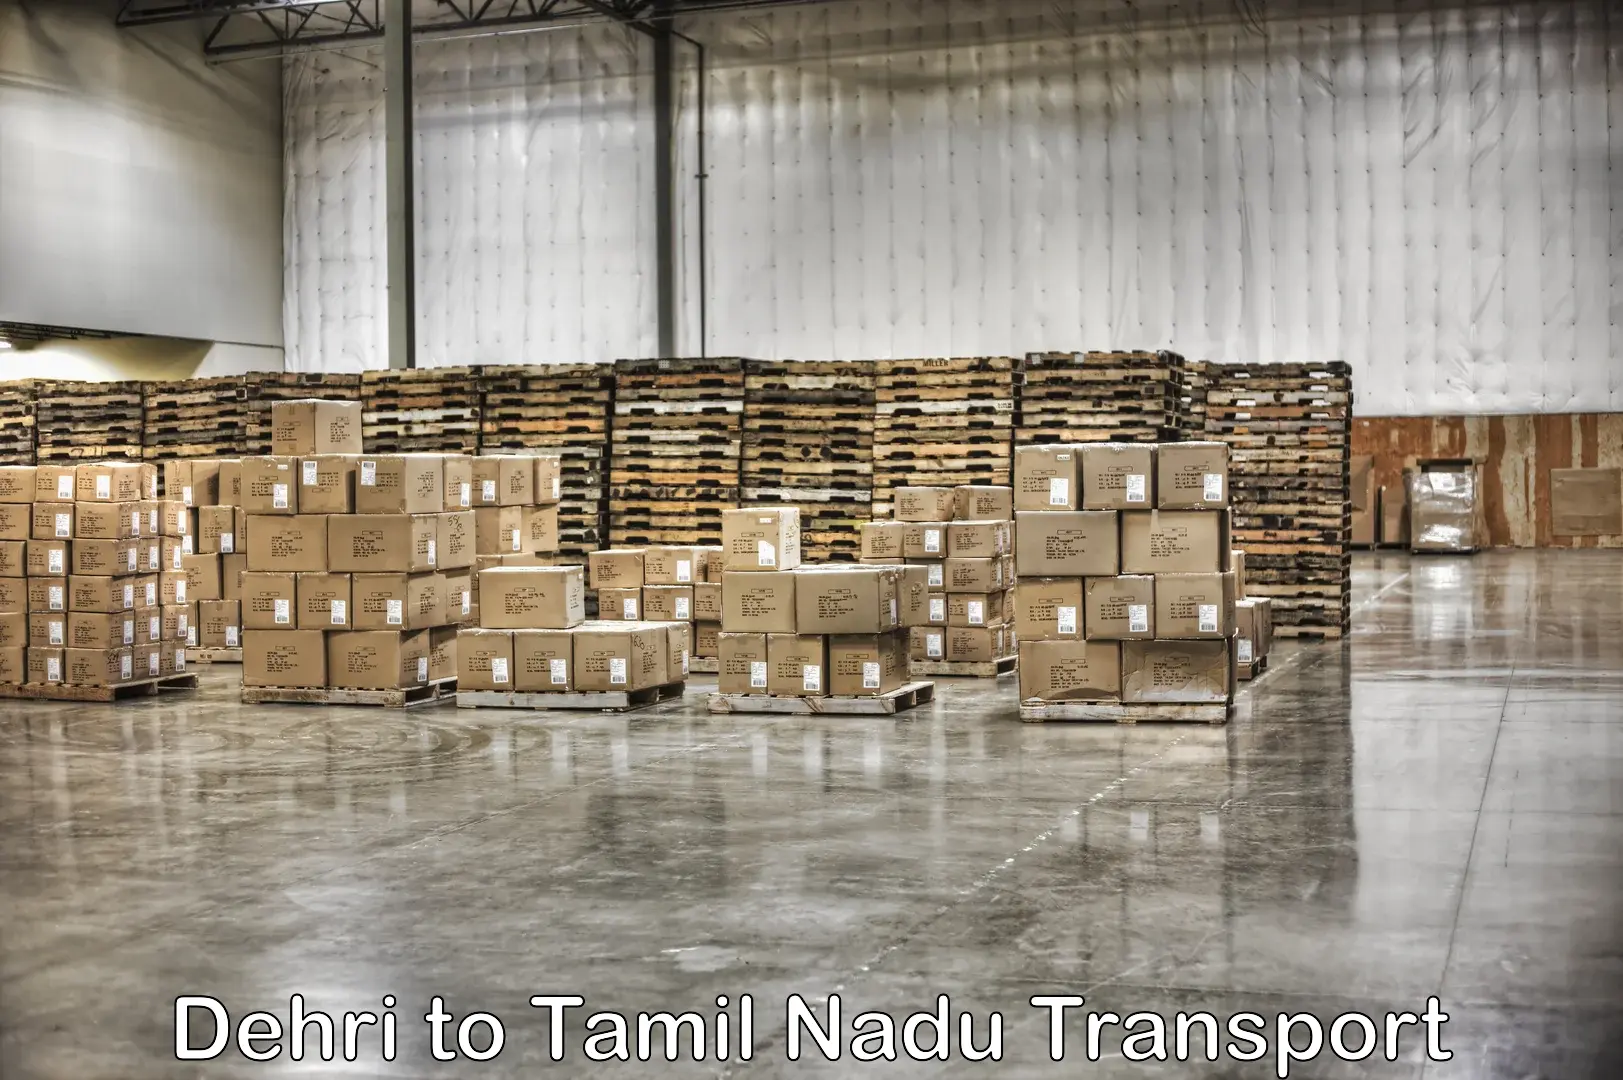 Online transport service Dehri to Thiruvadanai